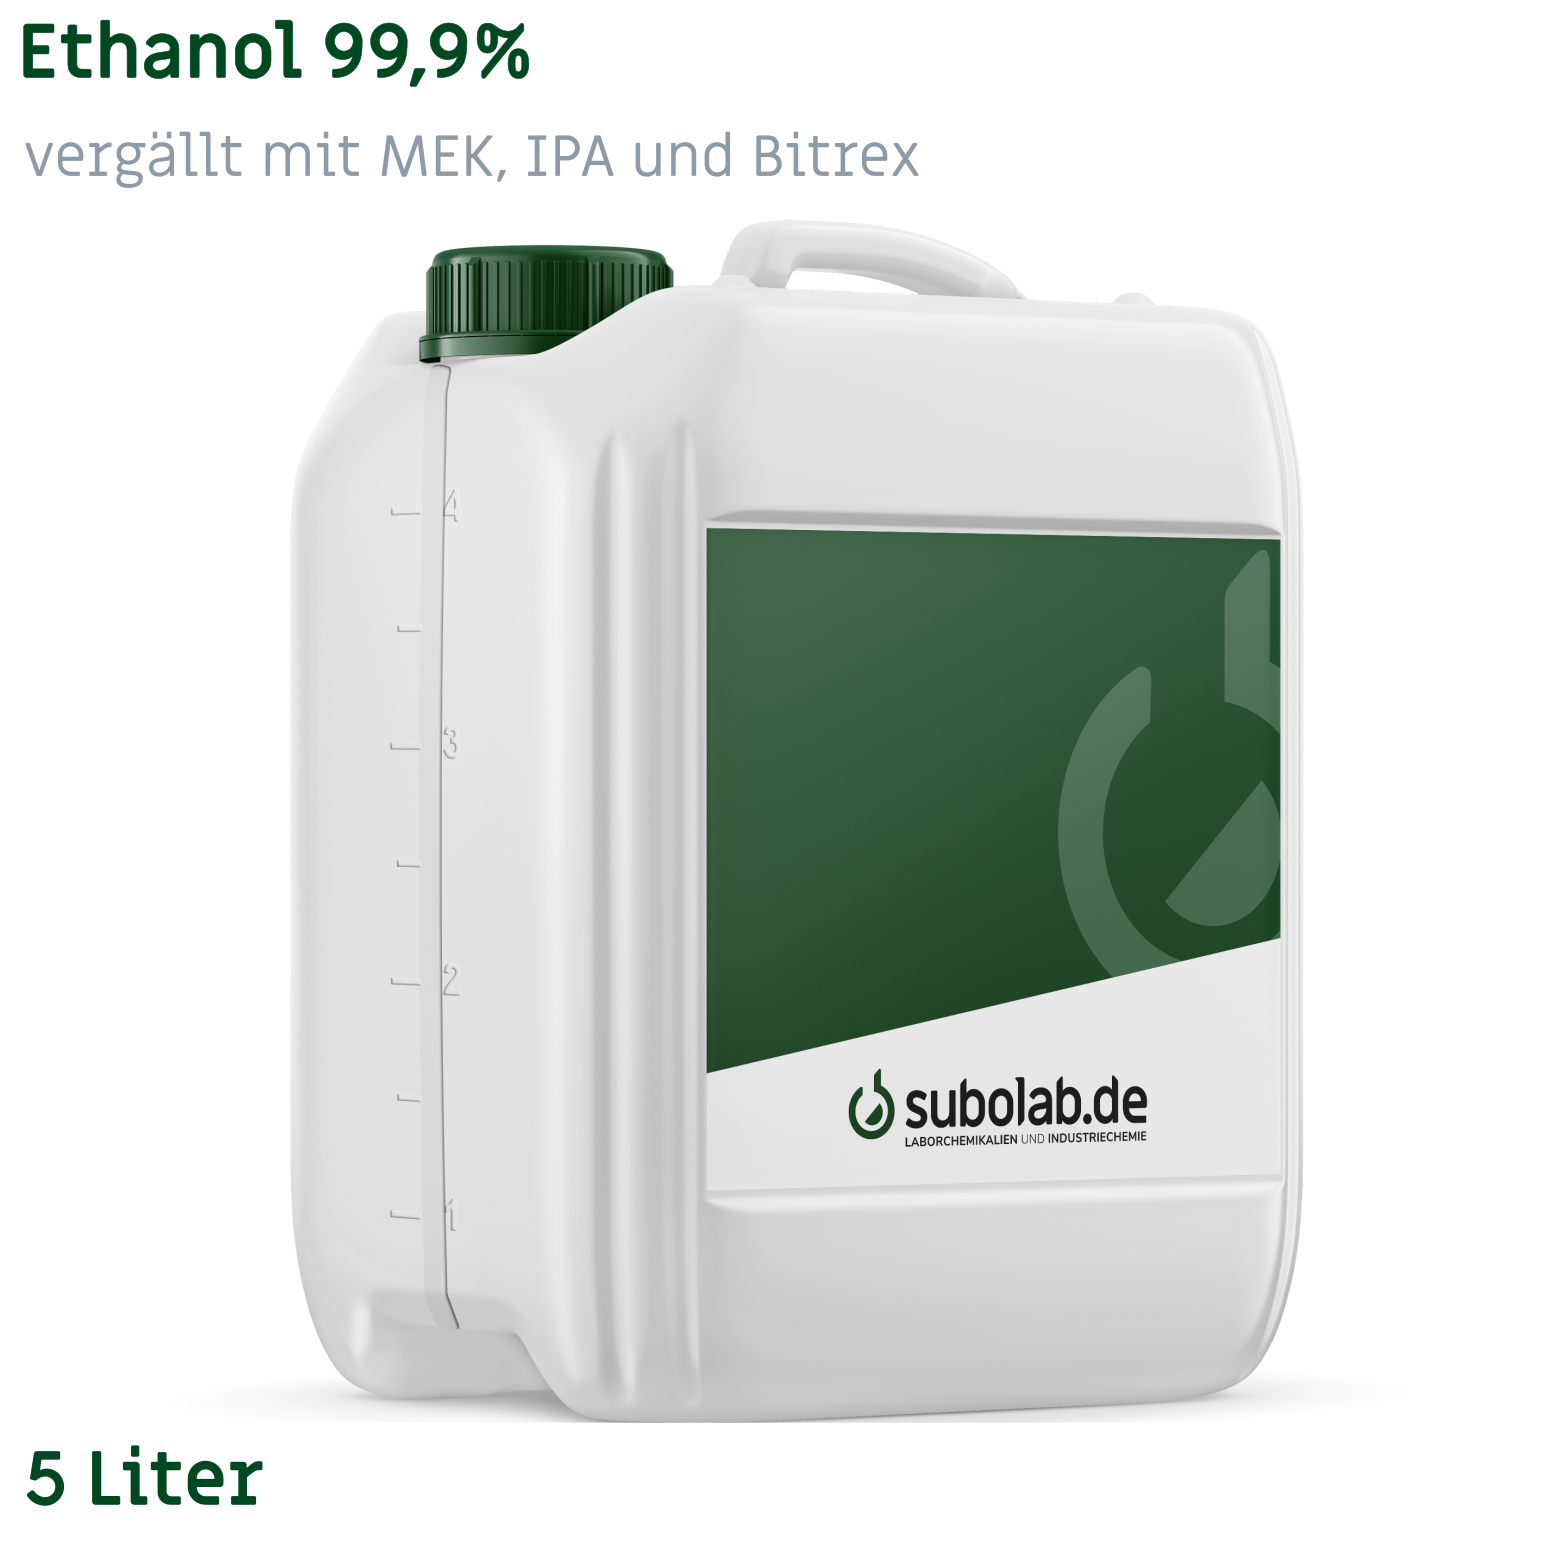 Bild von Ethanol 99,9% vergällt mit MEK, IPA und Bitrex (5 Liter)